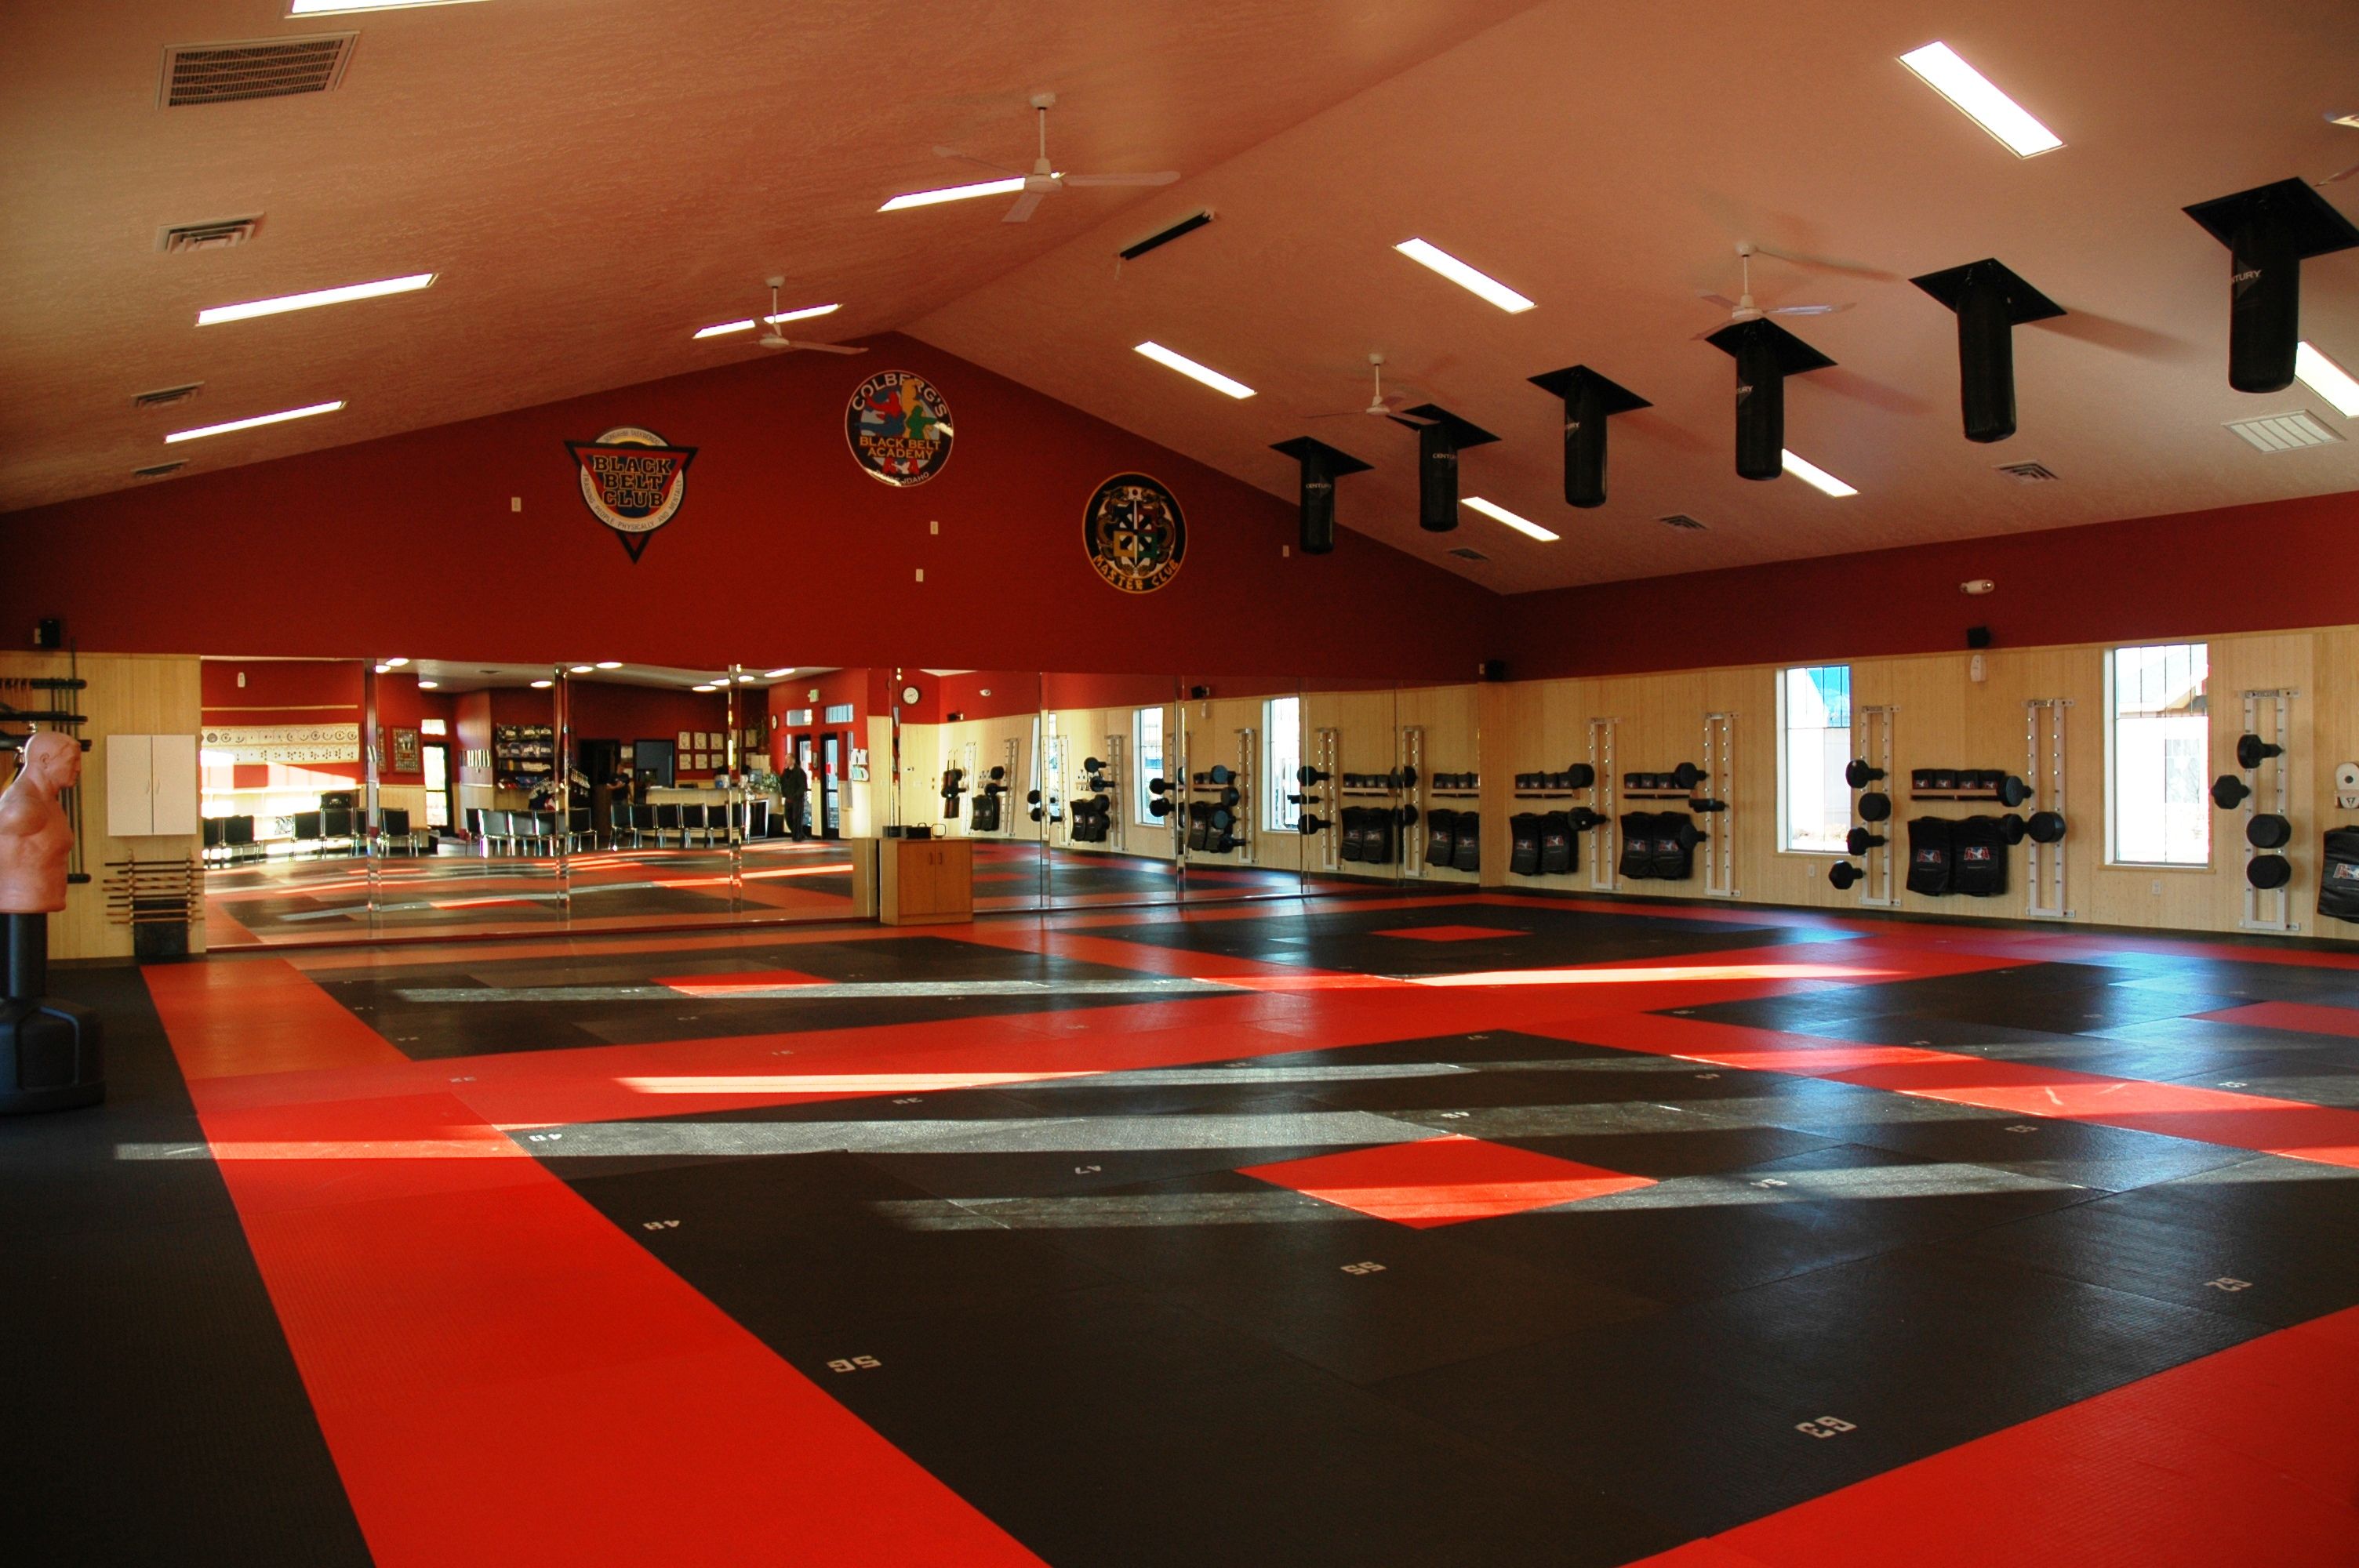 Our home away from home! | Martial arts gym, Dojo decor, Gym interior